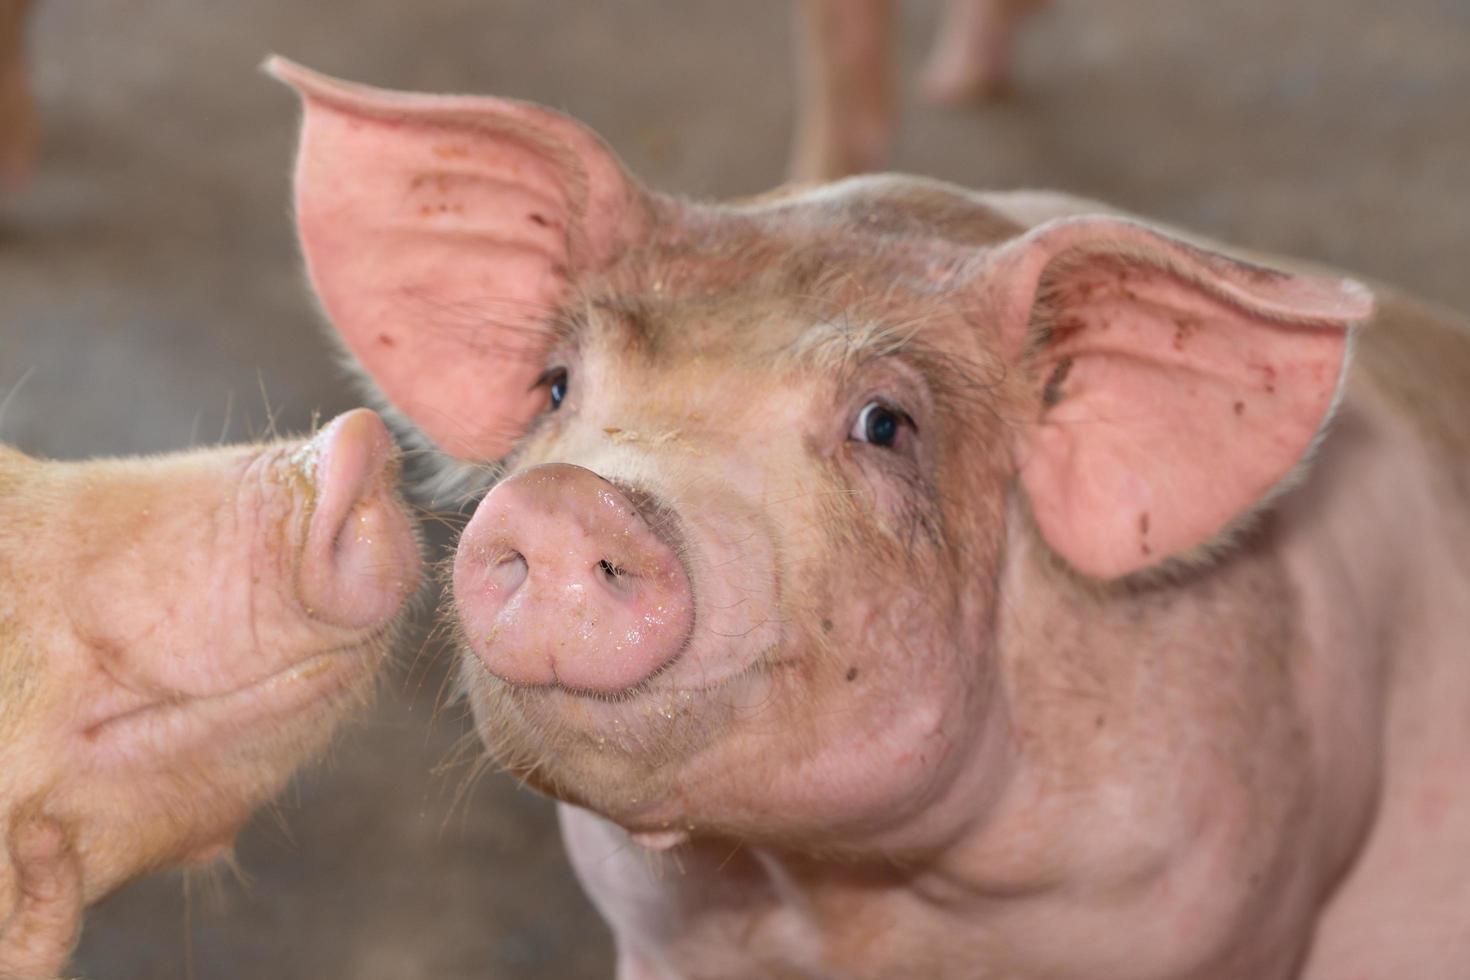 grupp av gris den där utseende friska i lokal- asean gris bruka på boskap. de begrepp av standardiserats och rena jordbruk utan lokal- sjukdomar eller betingelser den där påverka gris tillväxt eller fruktsamhet foto